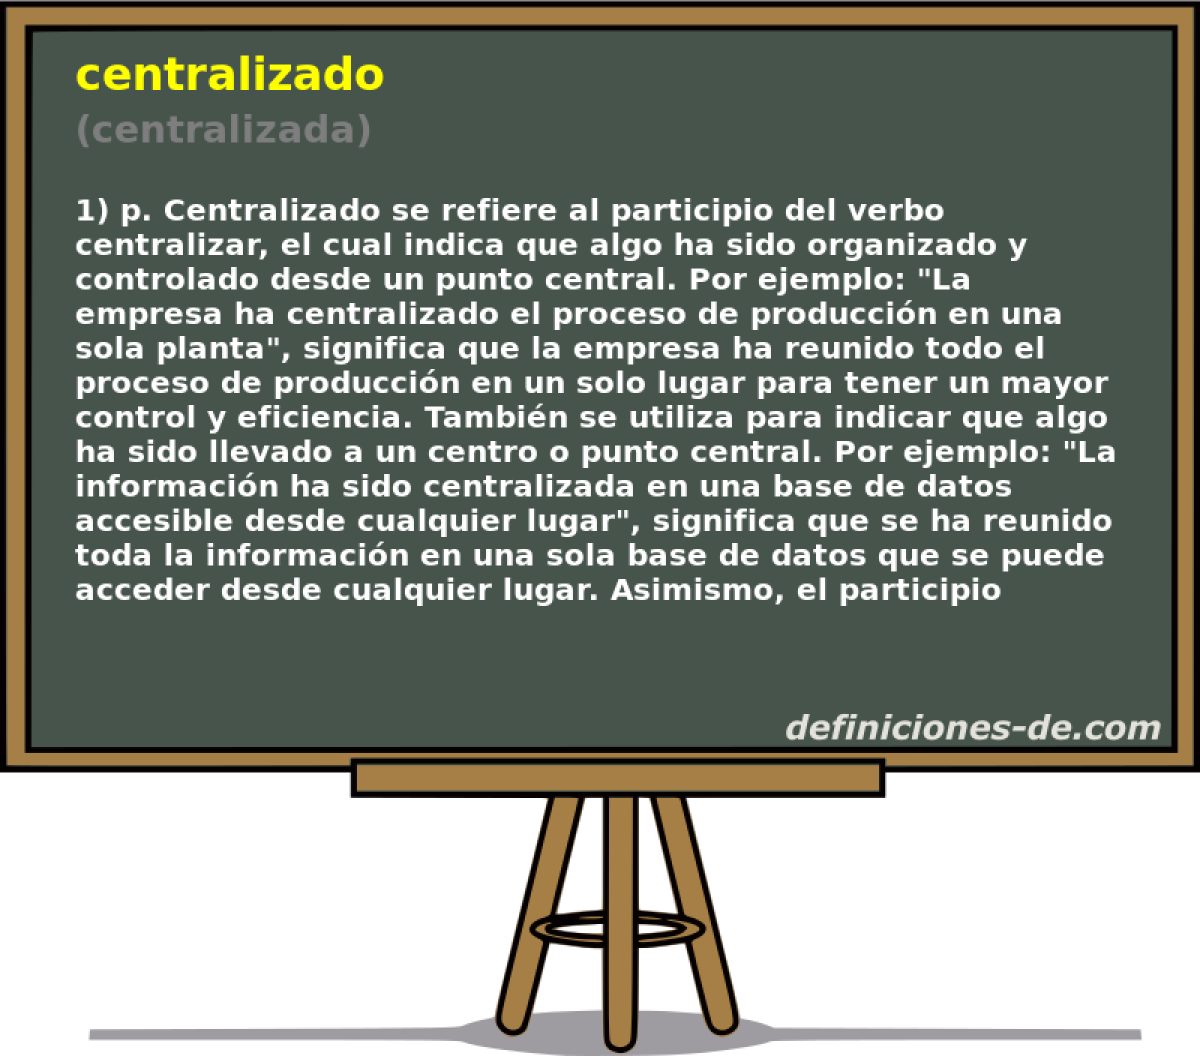 centralizado (centralizada)